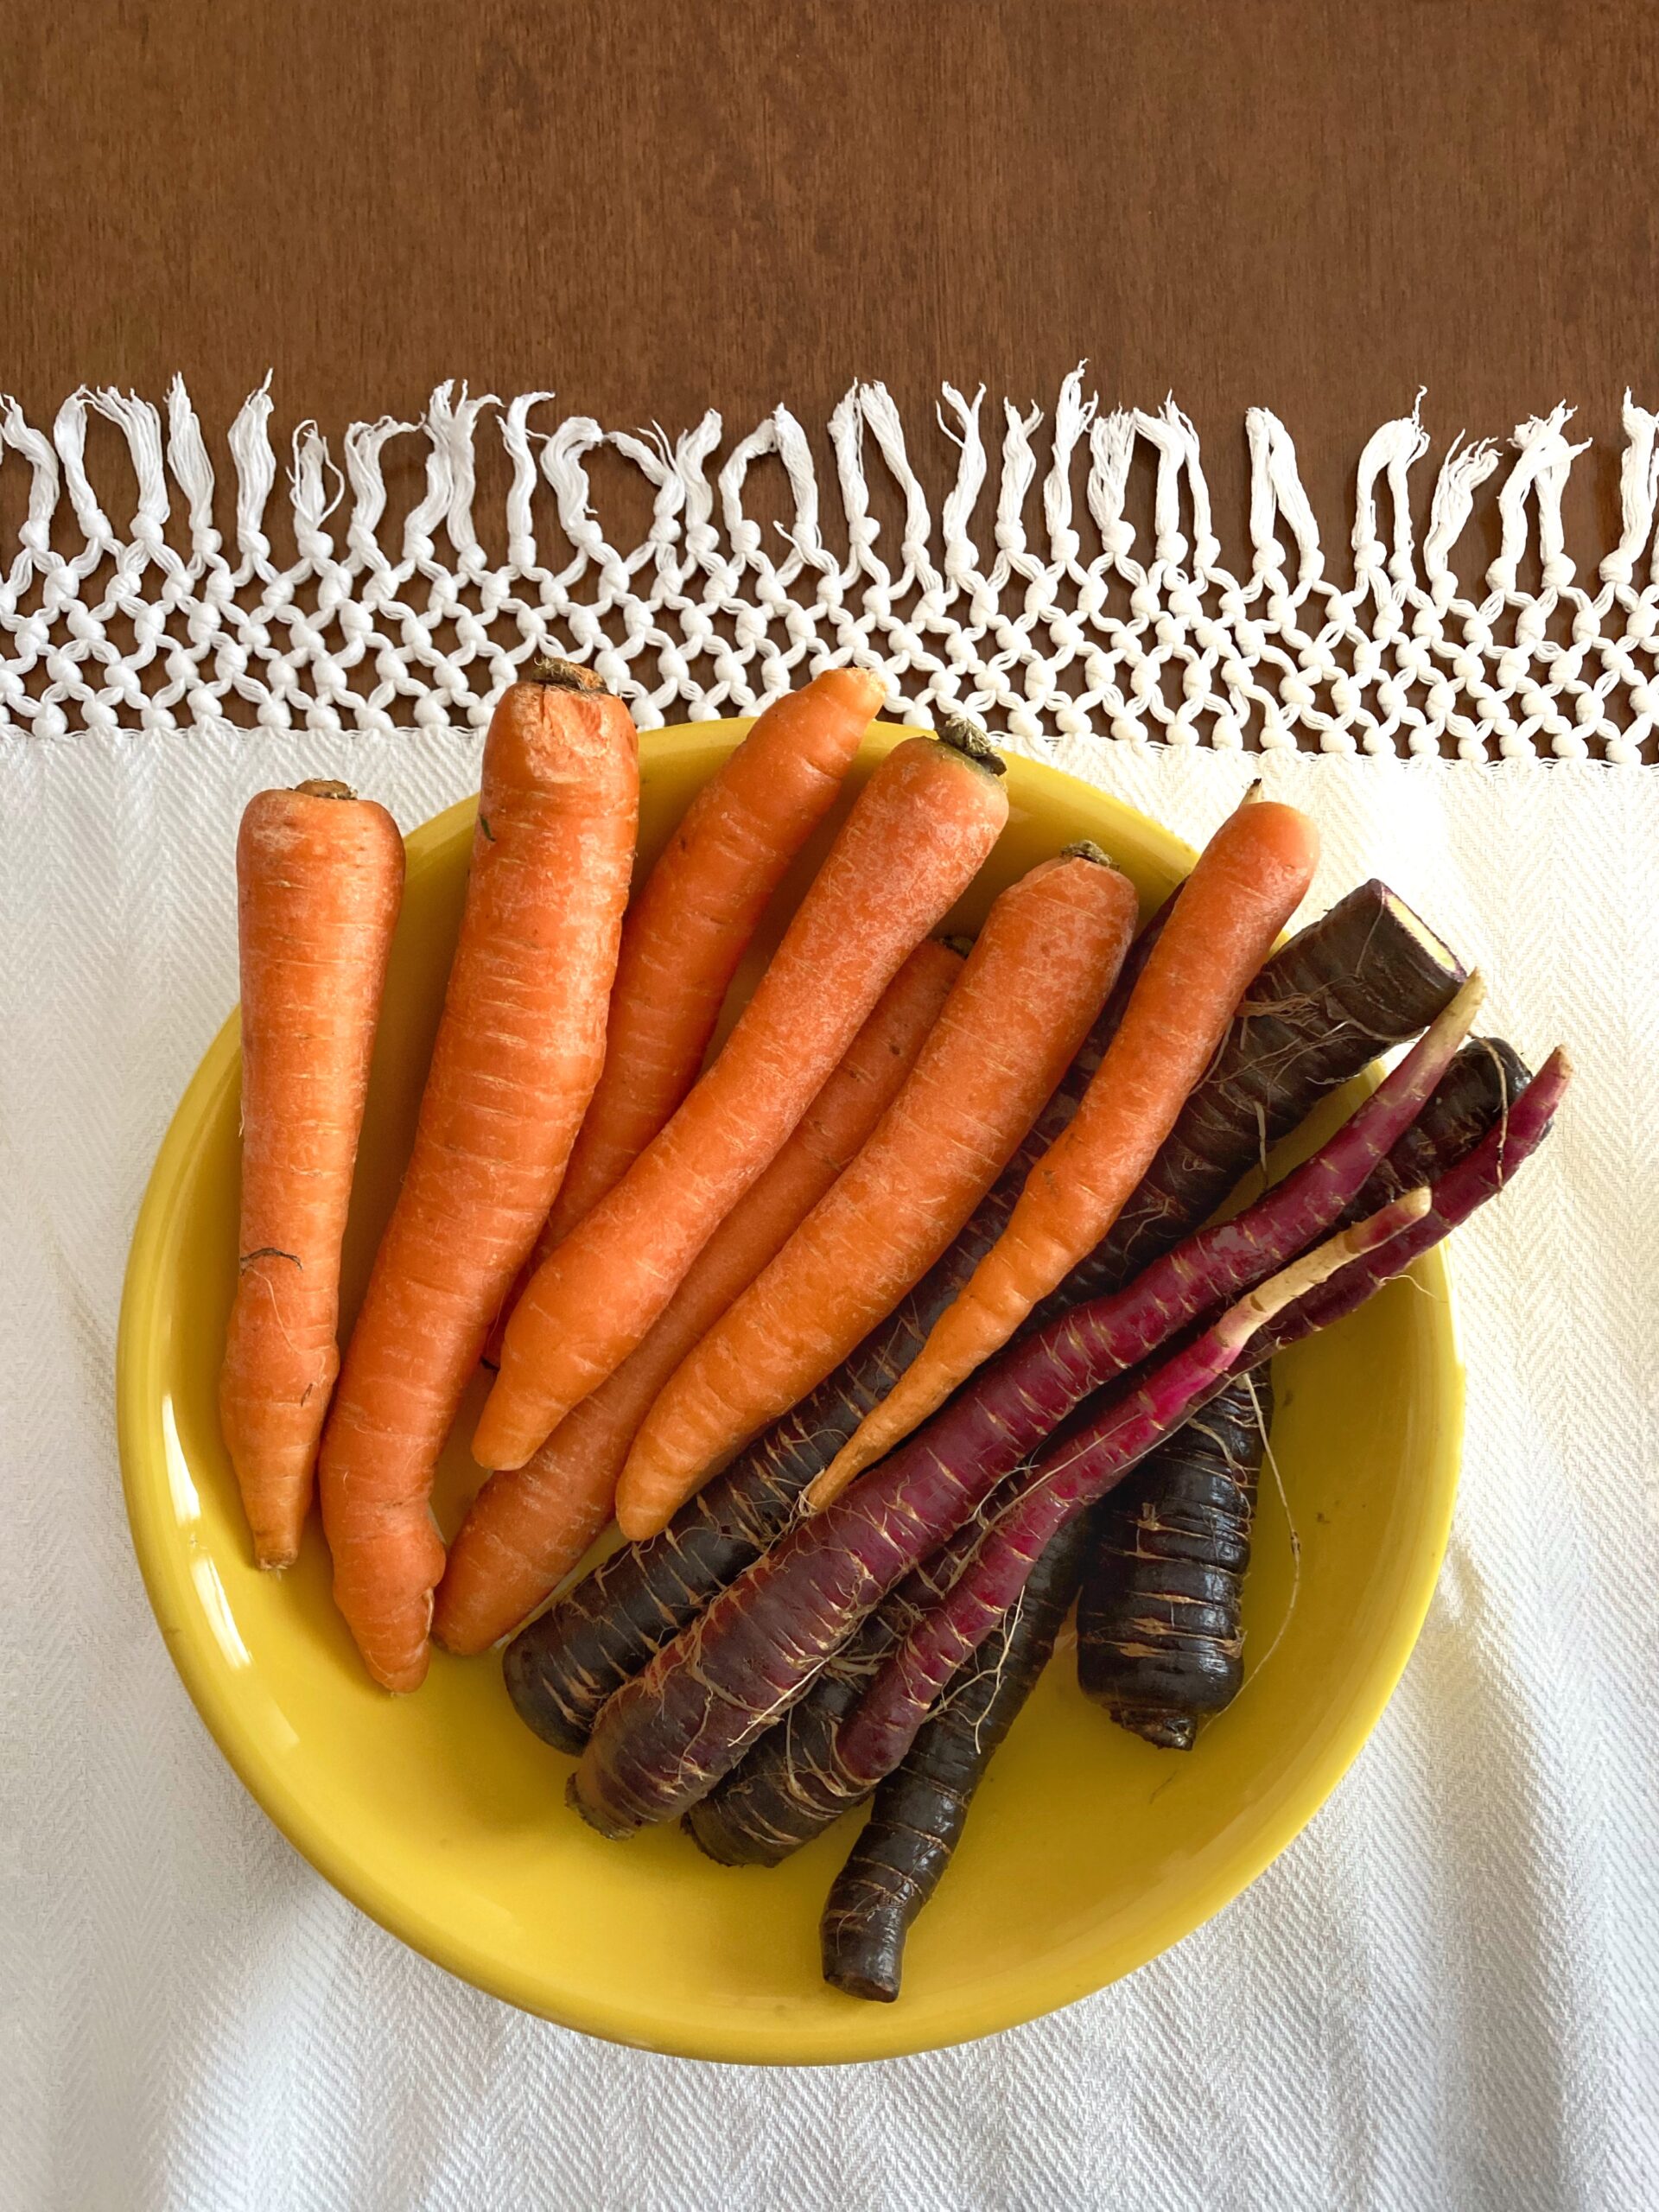 Receta saludable con las zanahorias